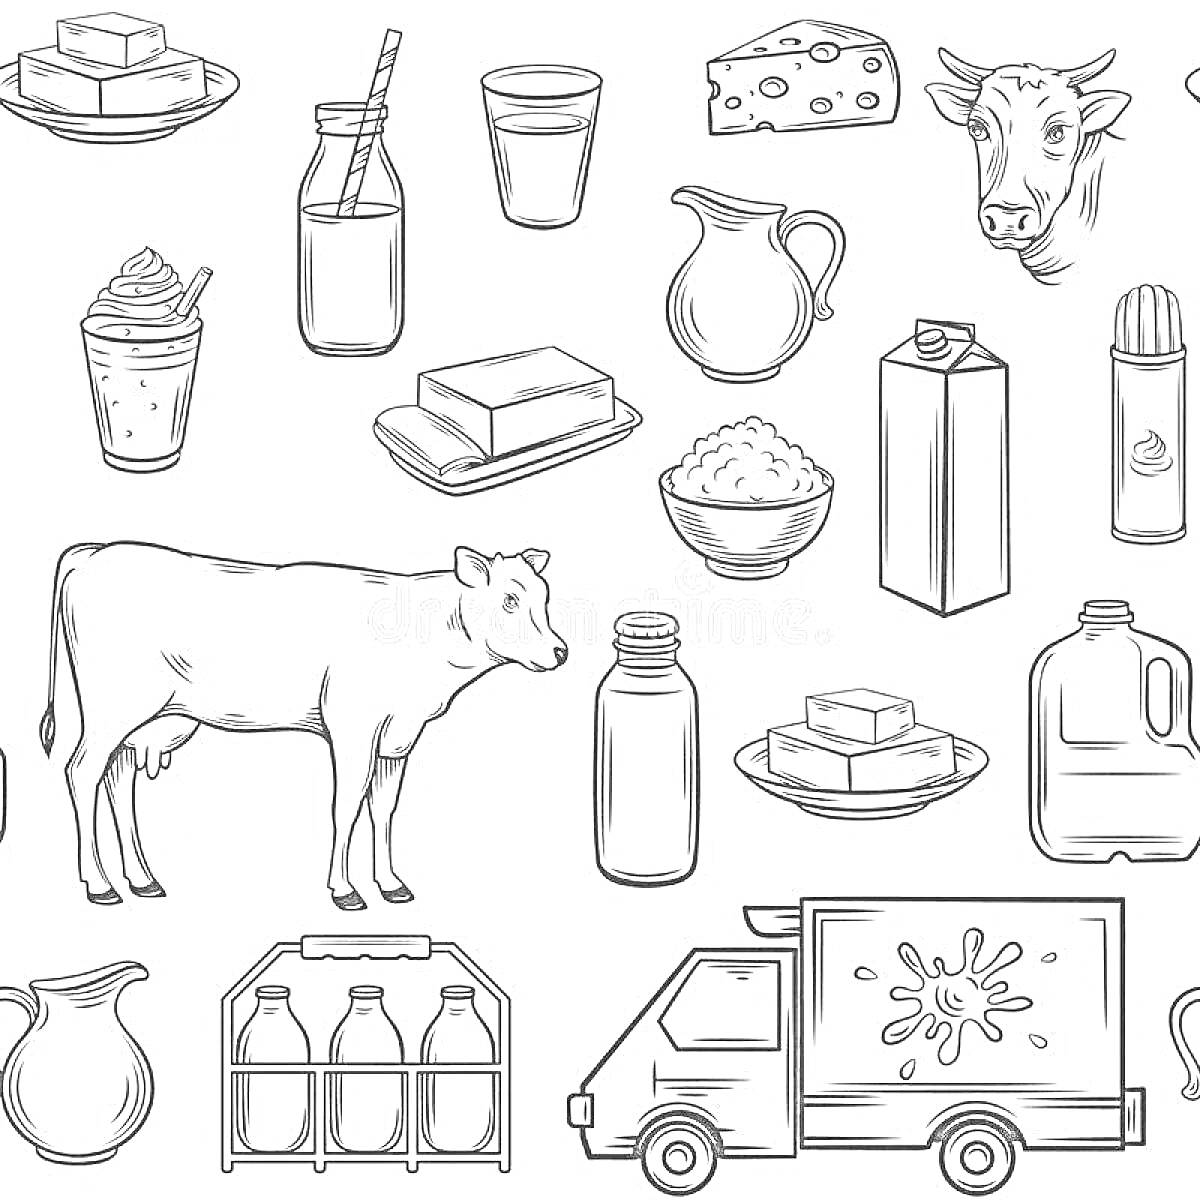 Раскраска молочные продукты: корова, стакан молока, бутылка молока с трубочкой, сыр, смузи, стакан, кувшин, масло, творог, упаковка молока, мороженое, корова, бутылка молока, грузовик, молочные бутылки в коробке